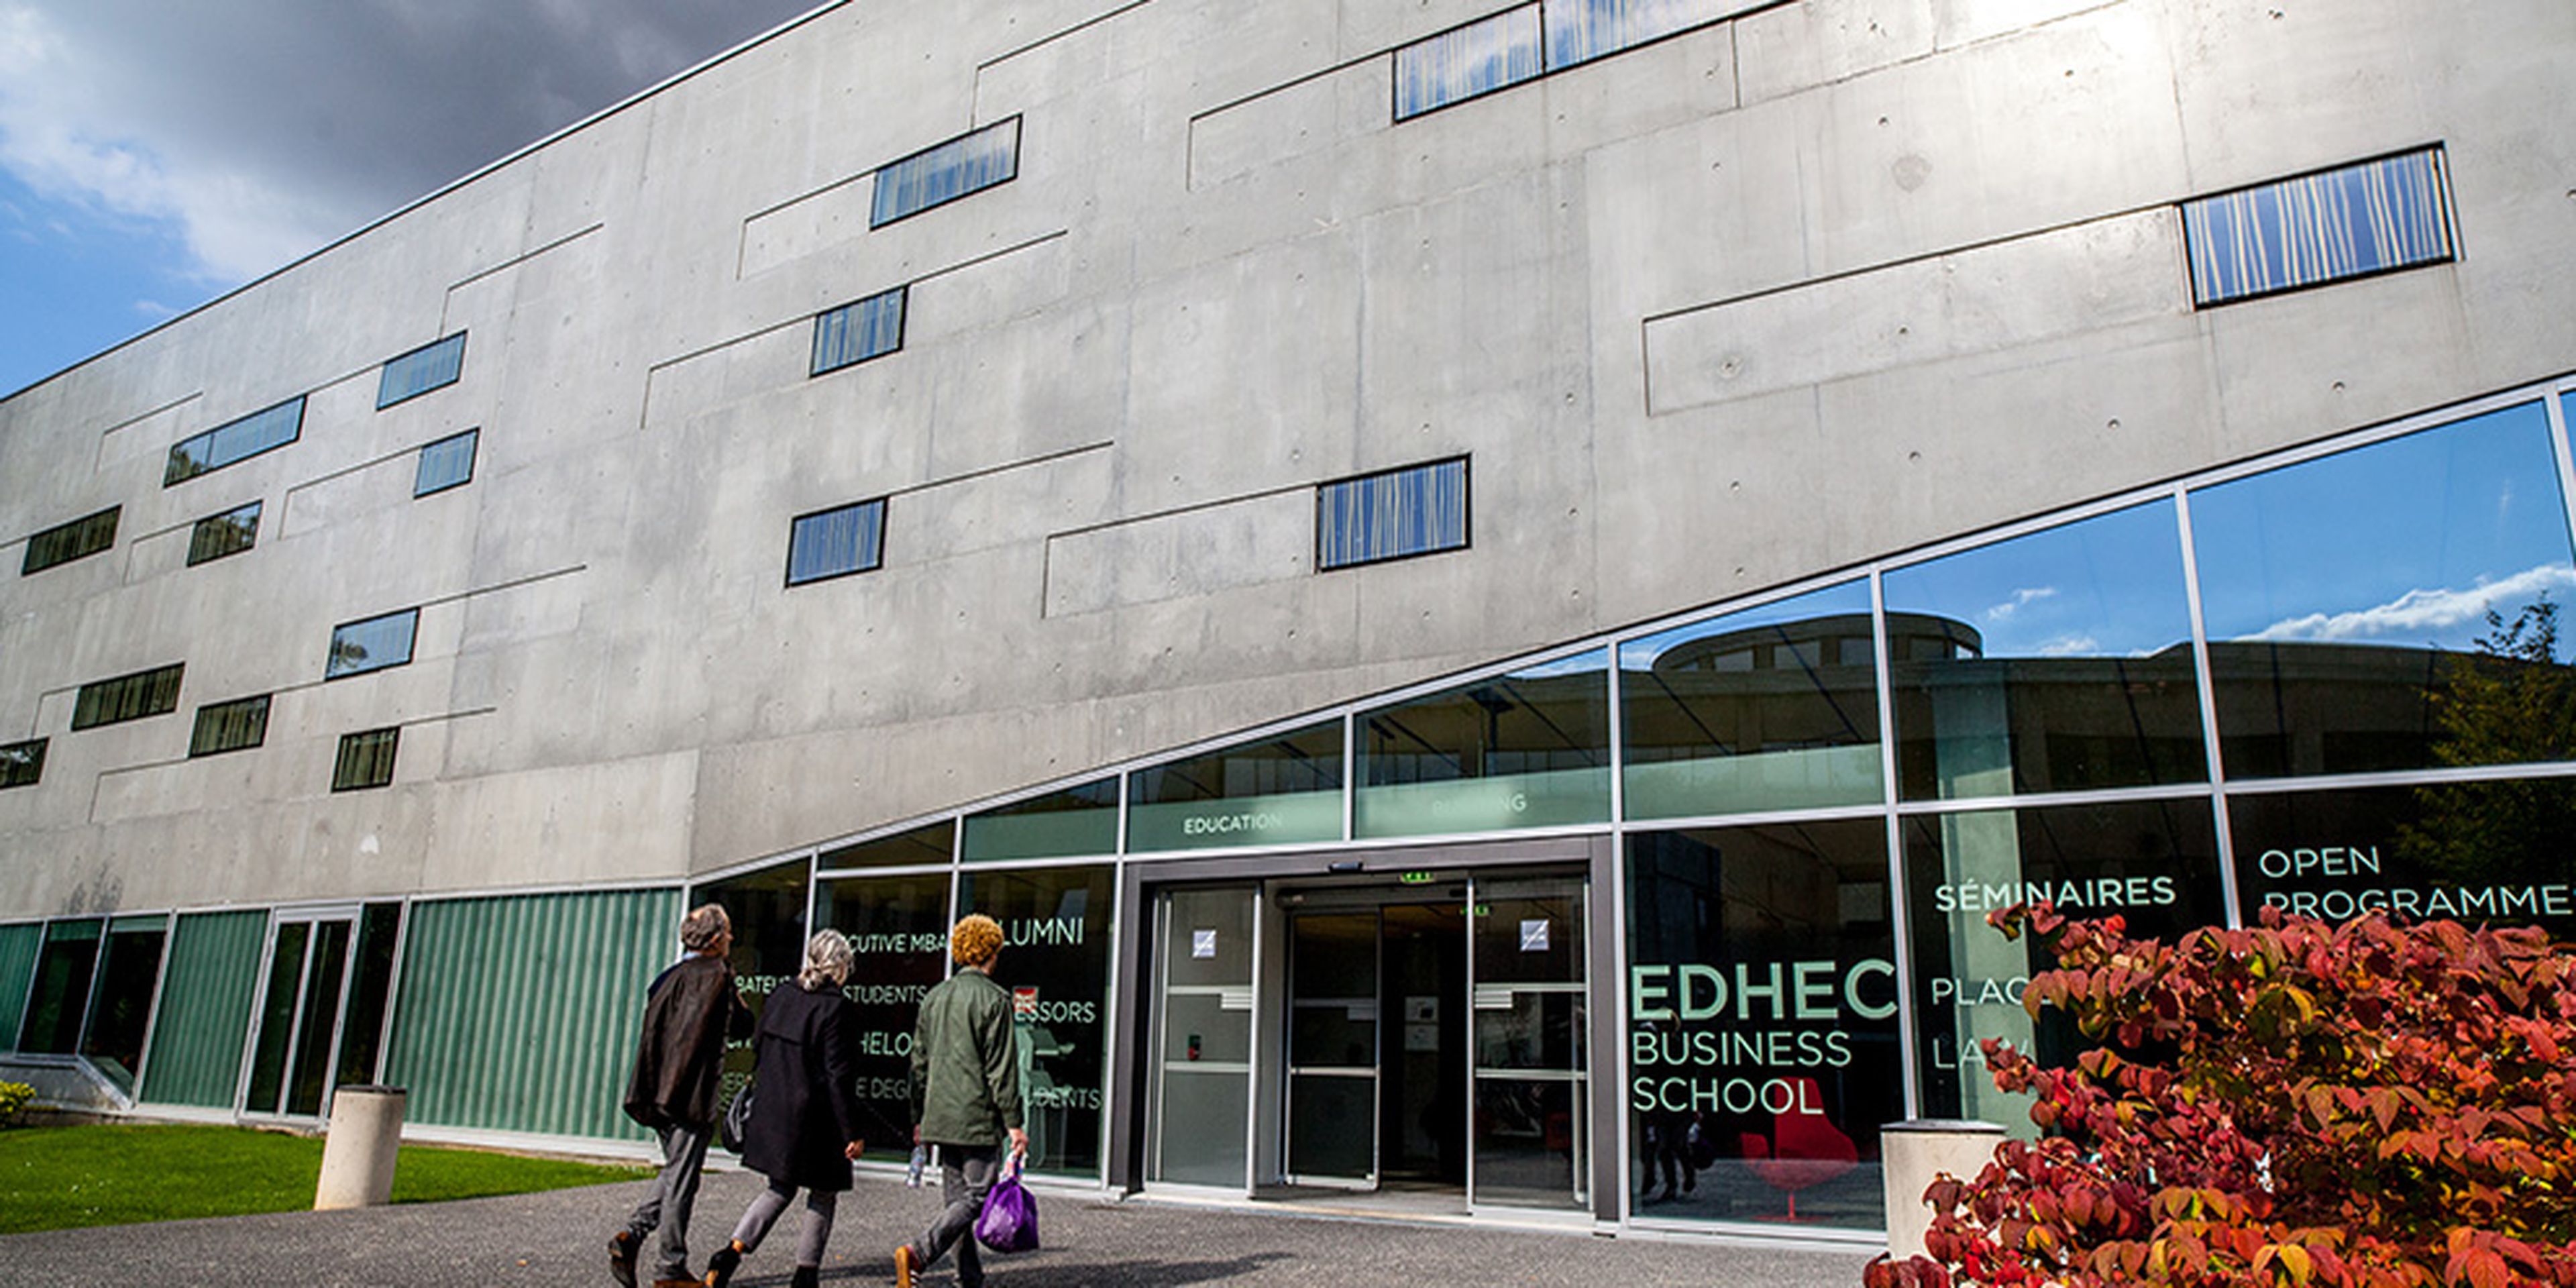 Edhec Business School